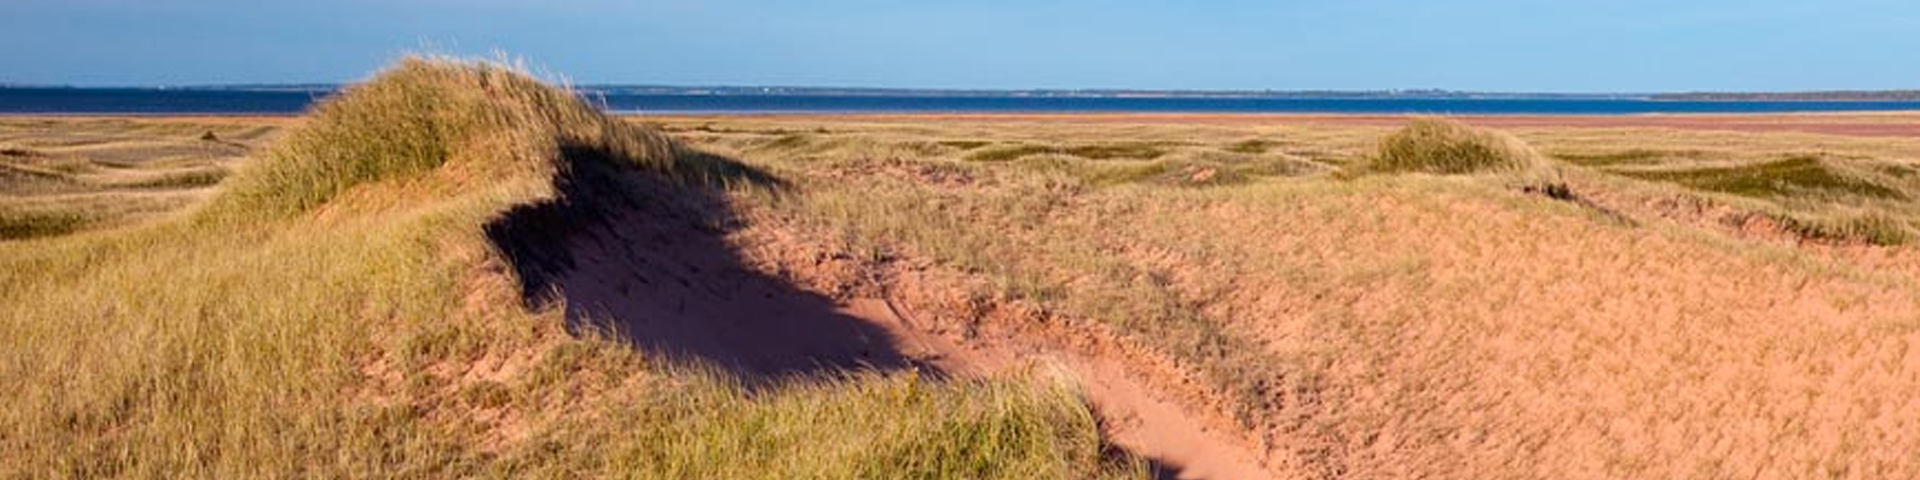 dunes couvertes d'herbe, ciel bleu et eau au loin